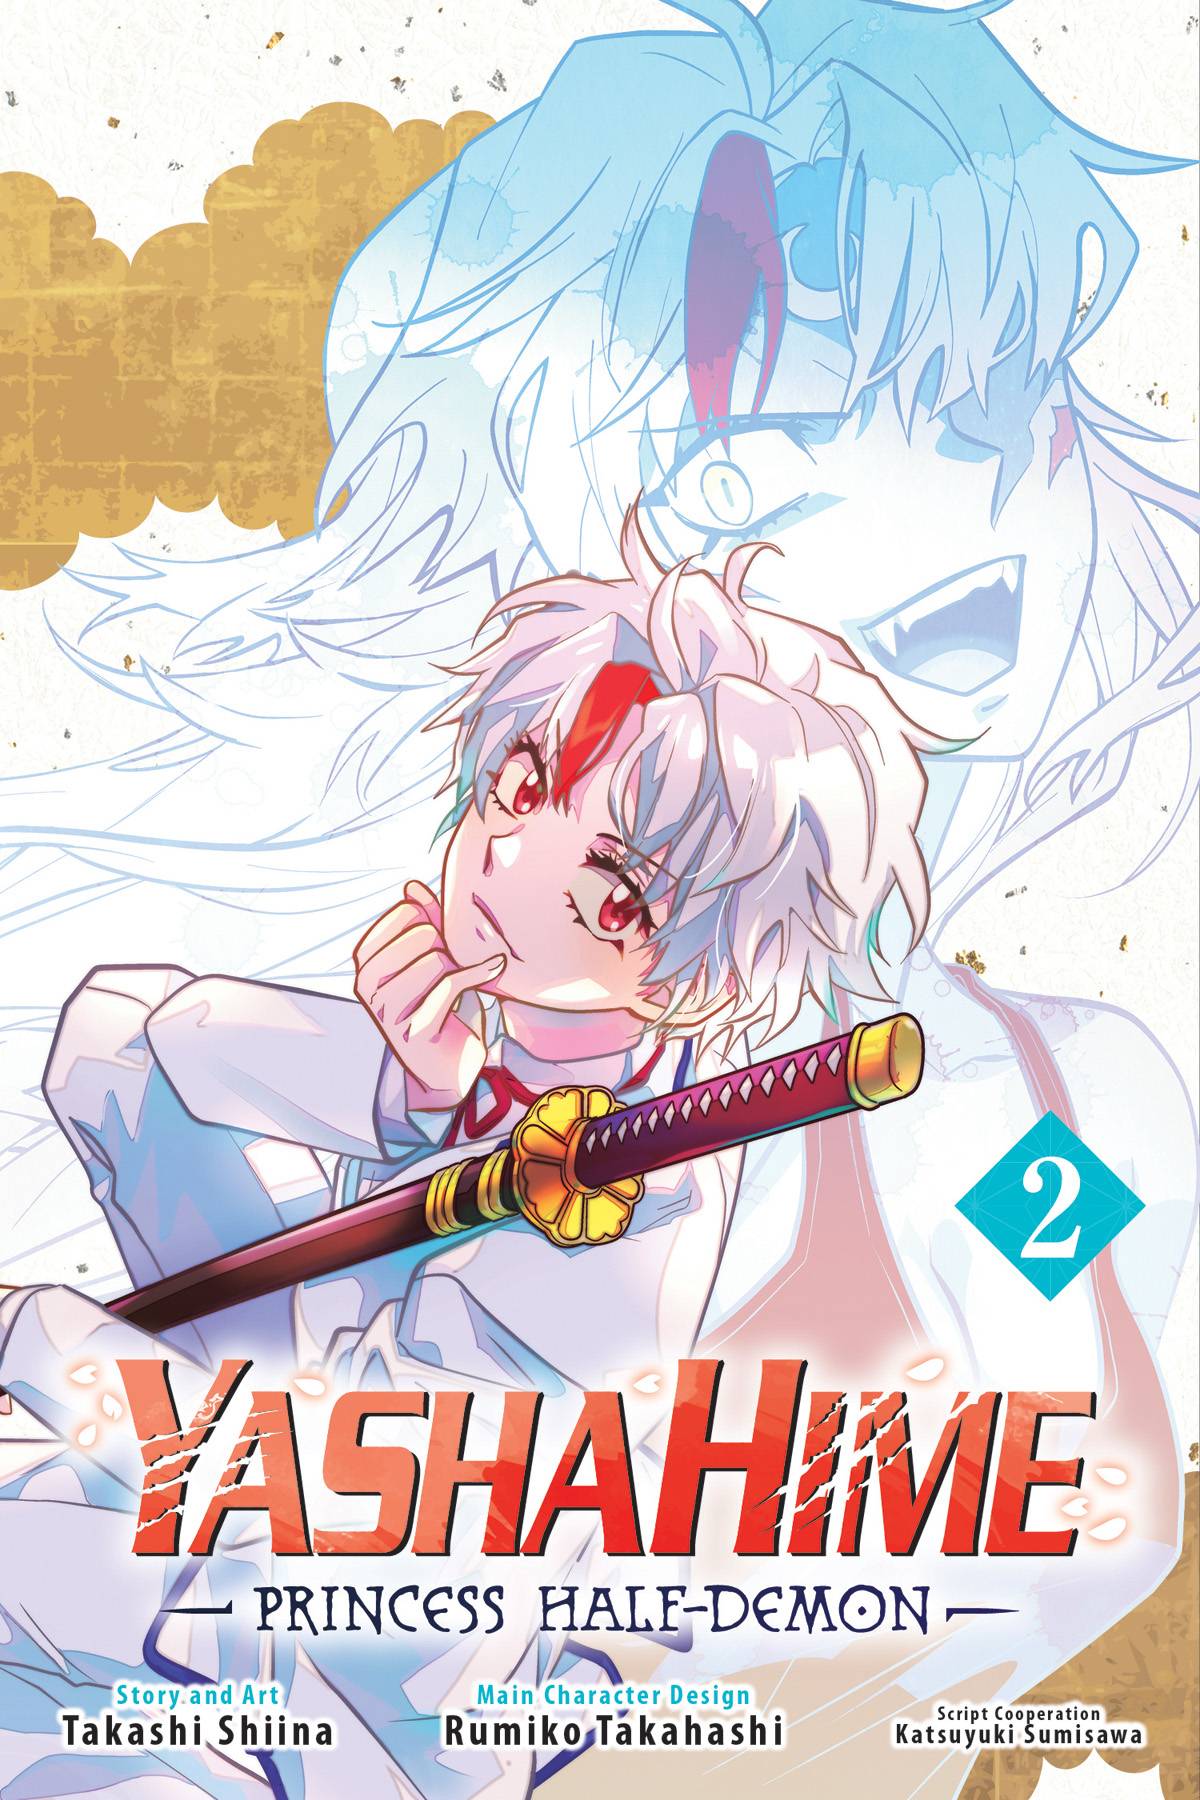 Yashahime Princess Half Demon Volume 02